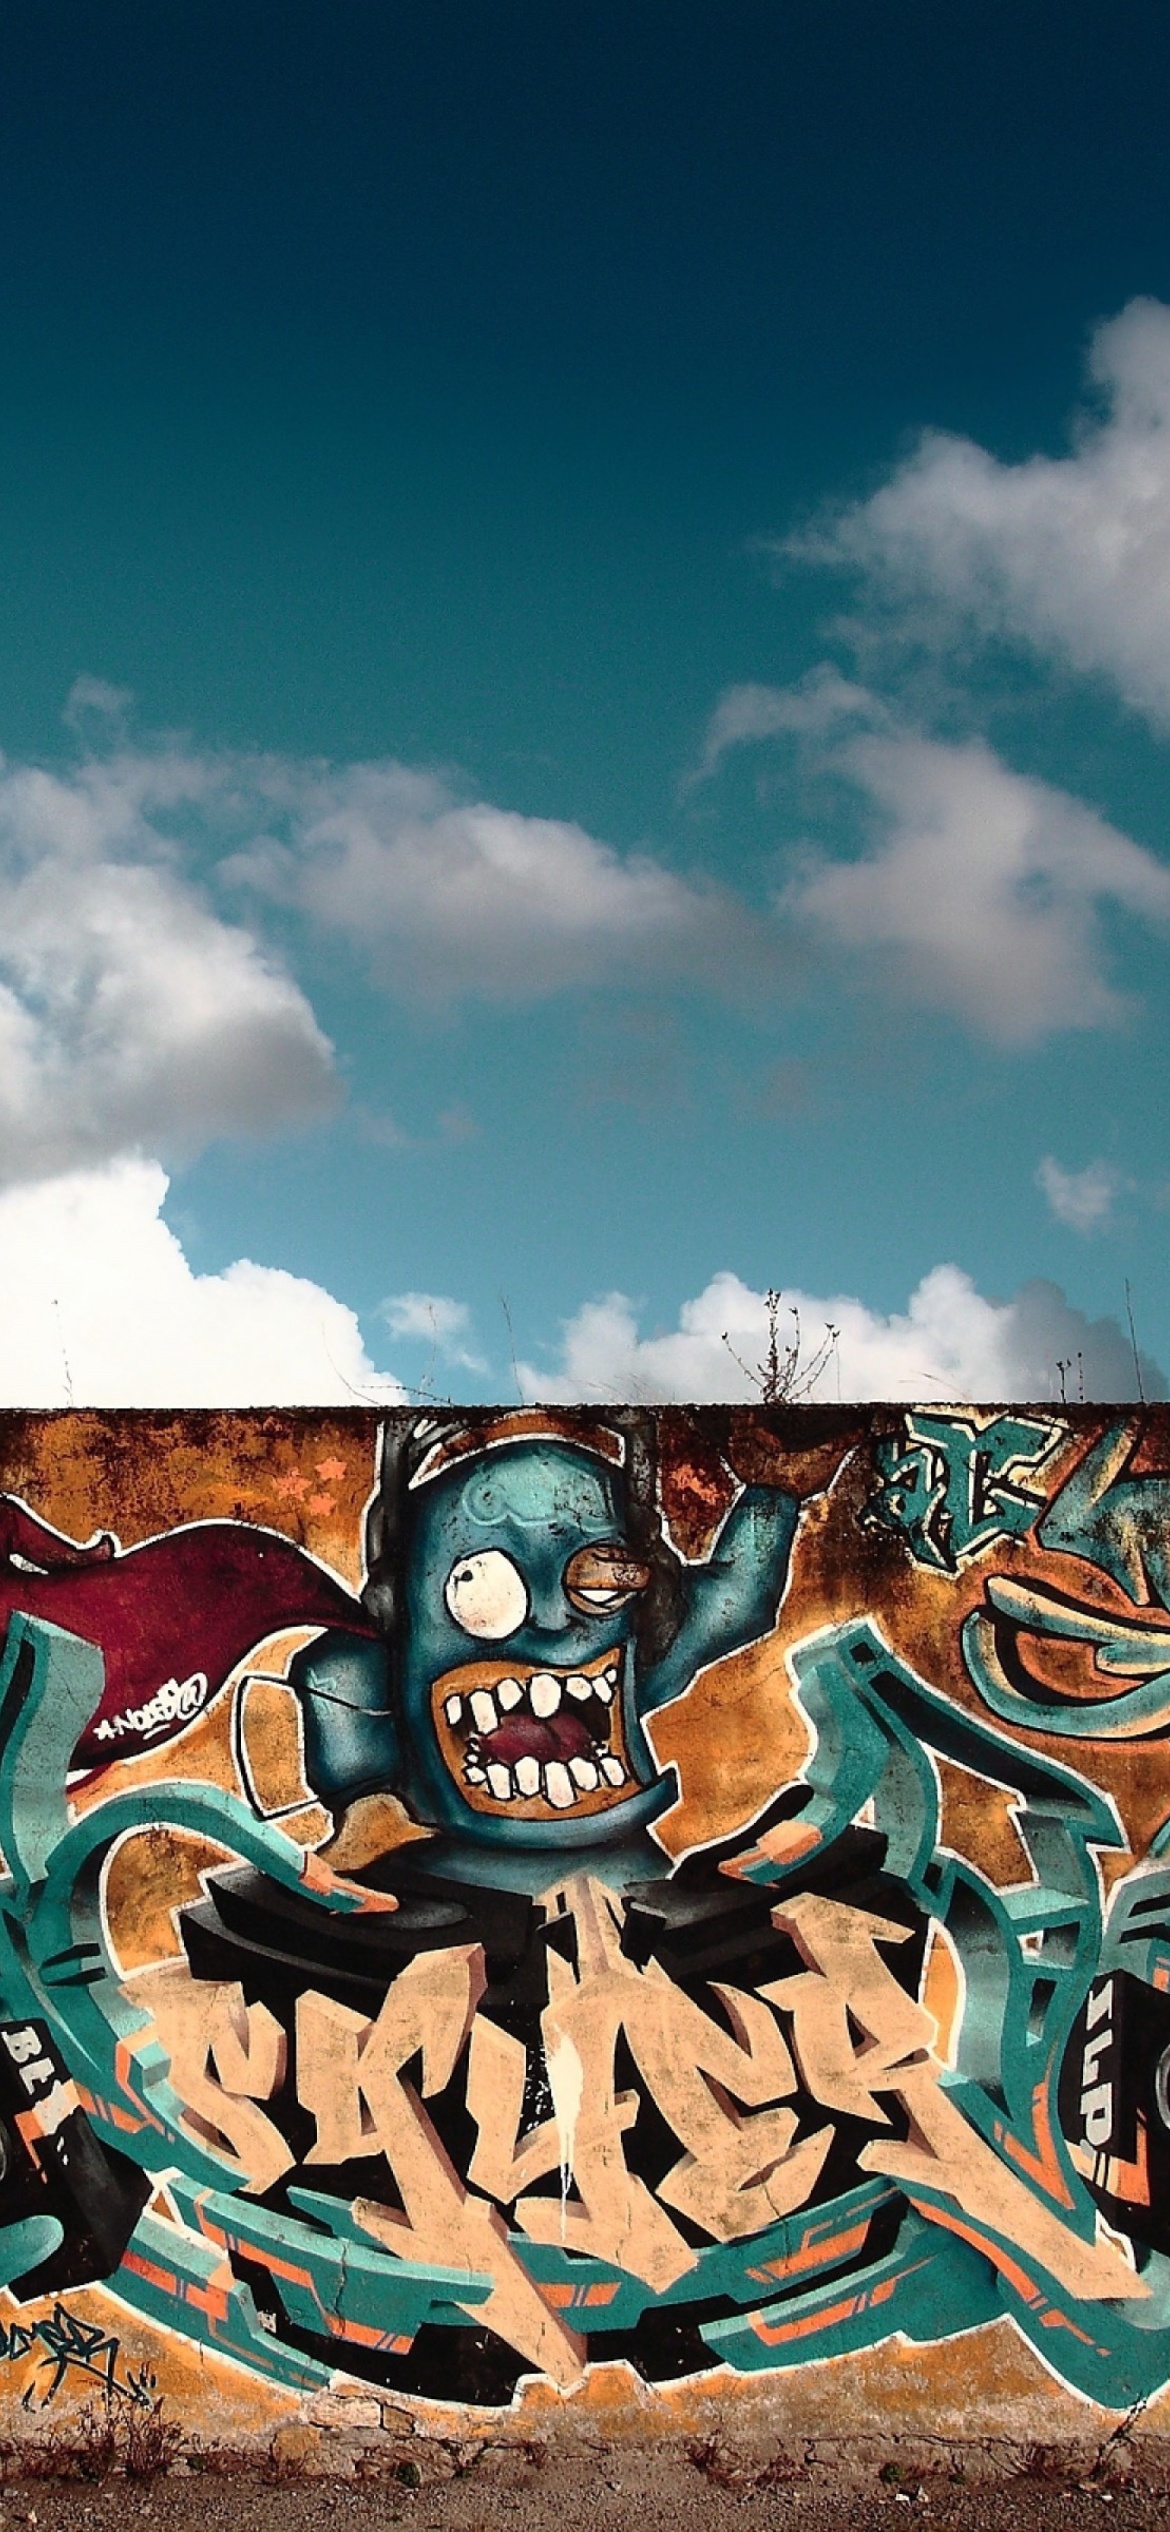 Sfondi Graffiti Street Art 1170x2532